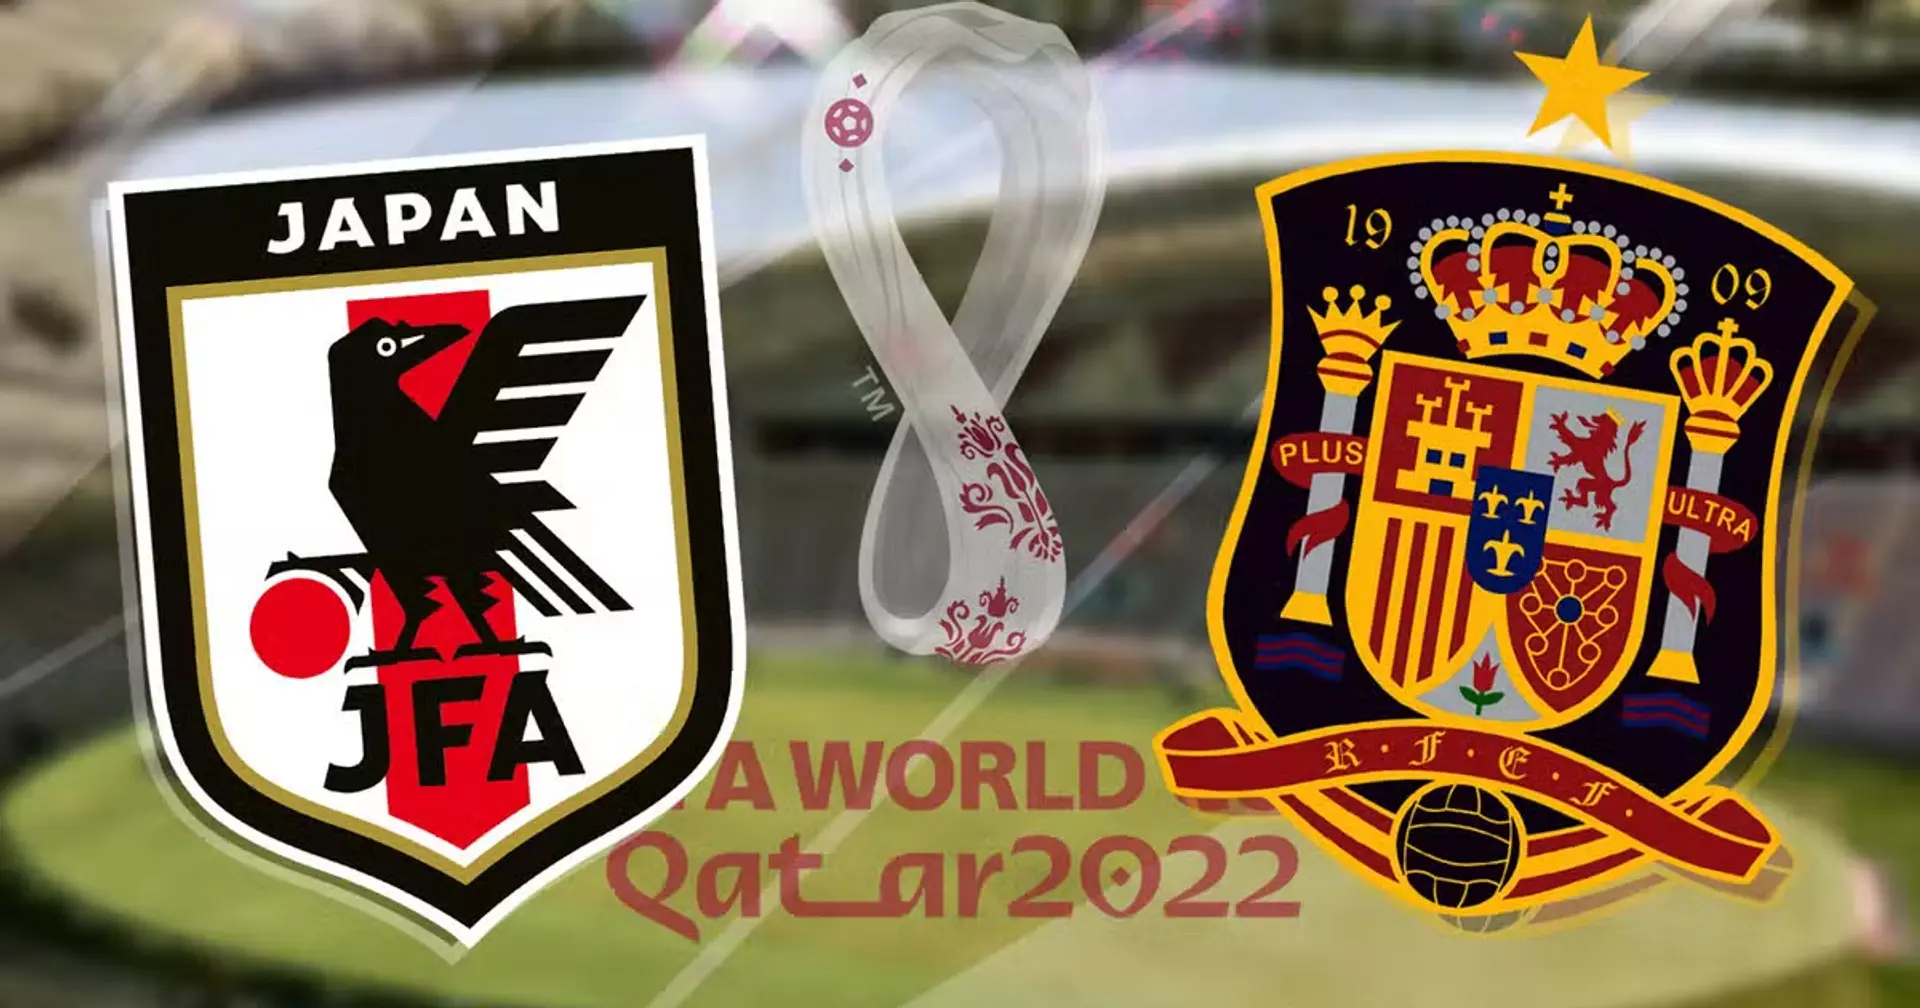 Giappone vs Spagna: le formazioni ufficiali delle squadre per la partita della Coppa del Mondo Qatar 2022 